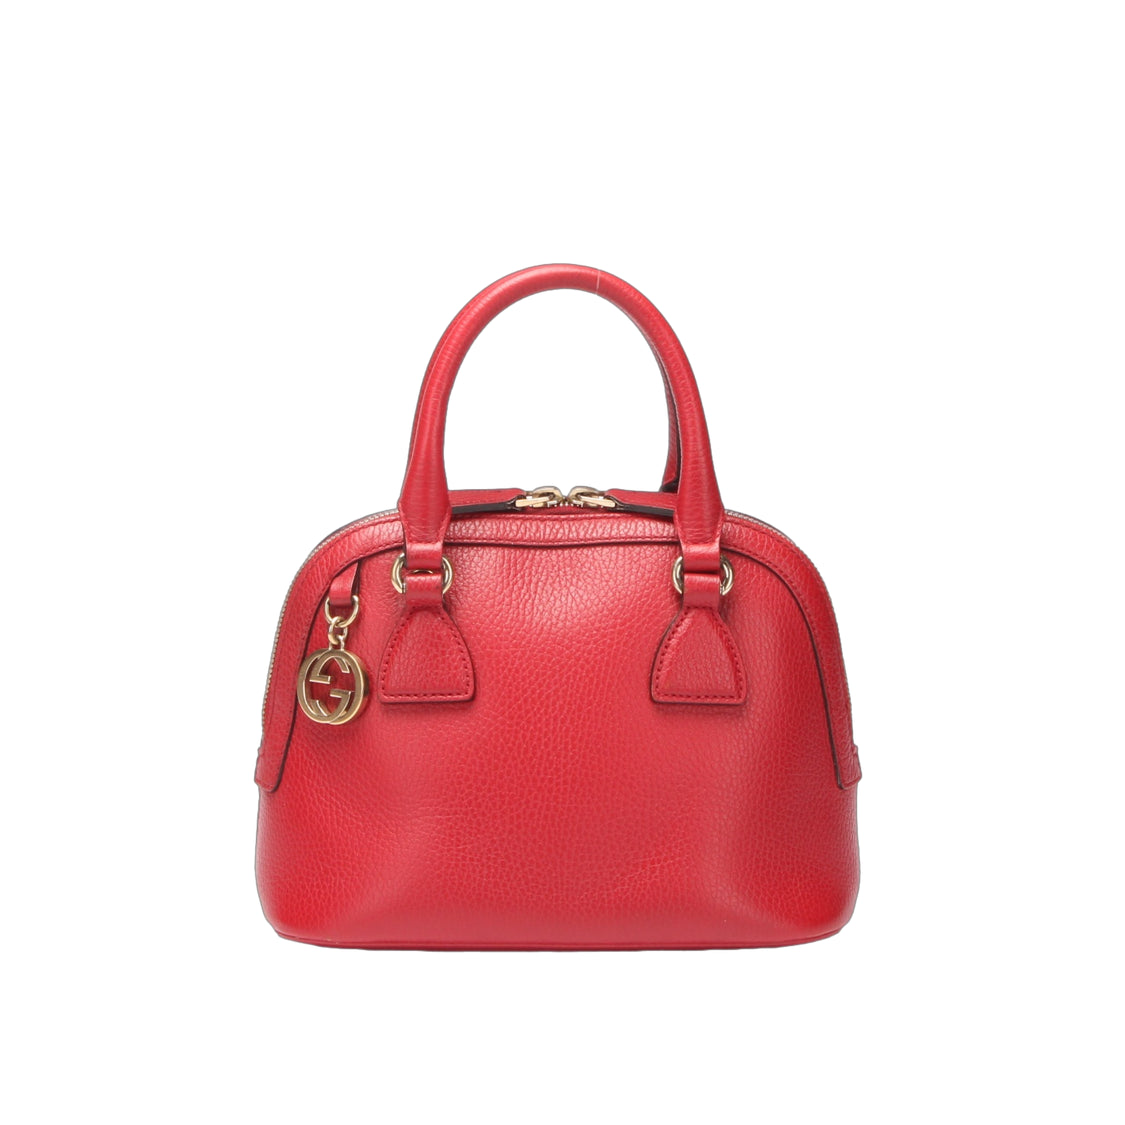 GG Charm Leather Handbag